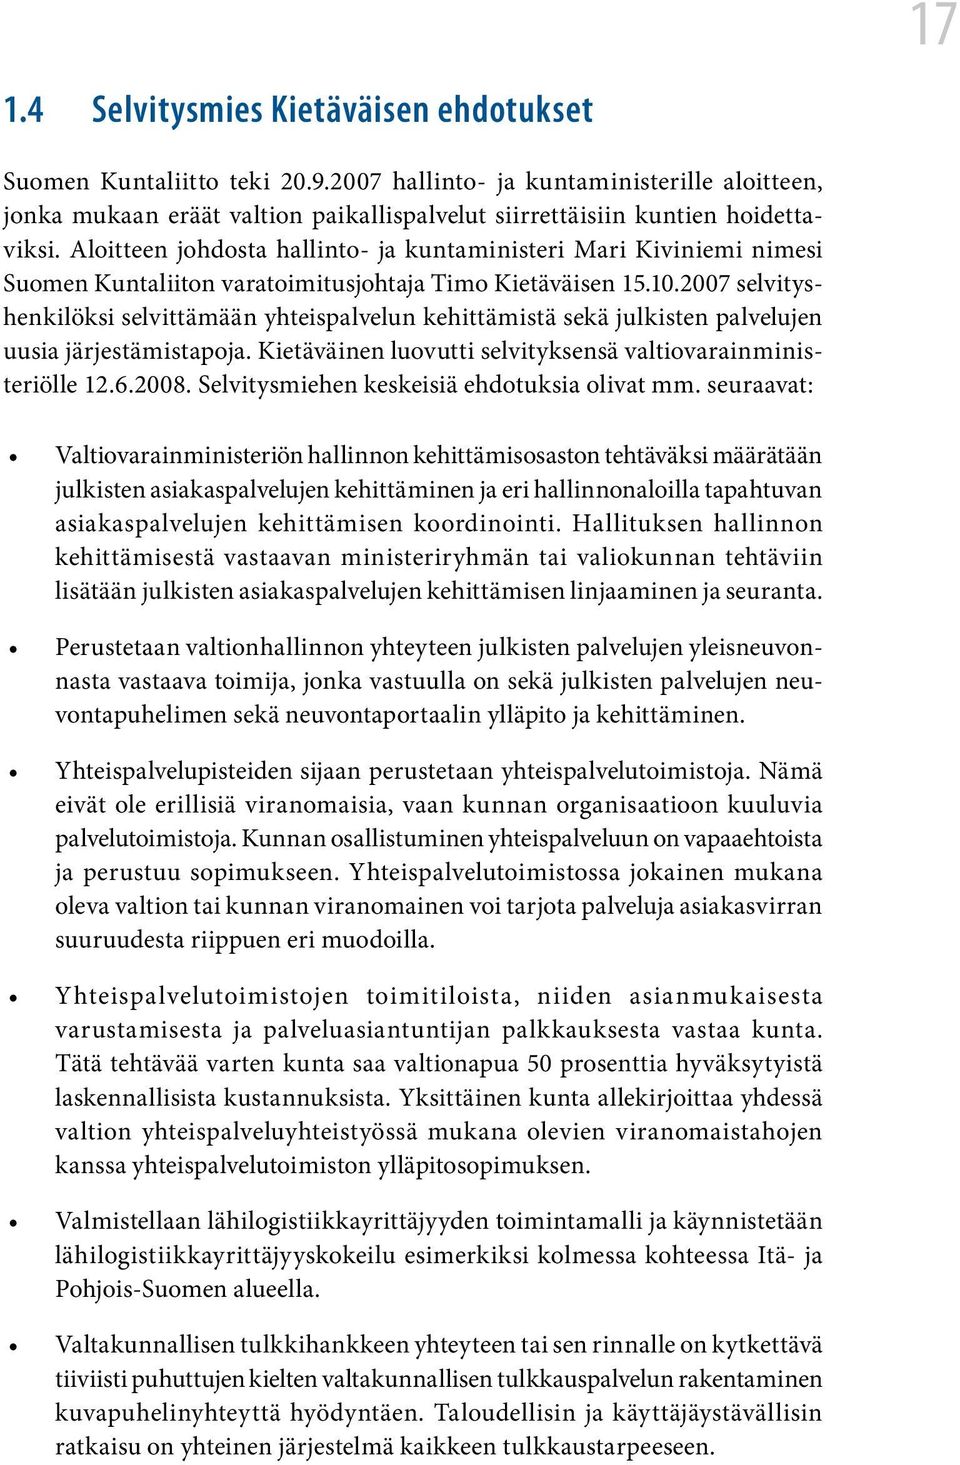 Aloitteen johdosta hallinto- ja kuntaministeri Mari Kiviniemi nimesi Suomen Kuntaliiton varatoimitusjohtaja Timo Kietäväisen 15.10.